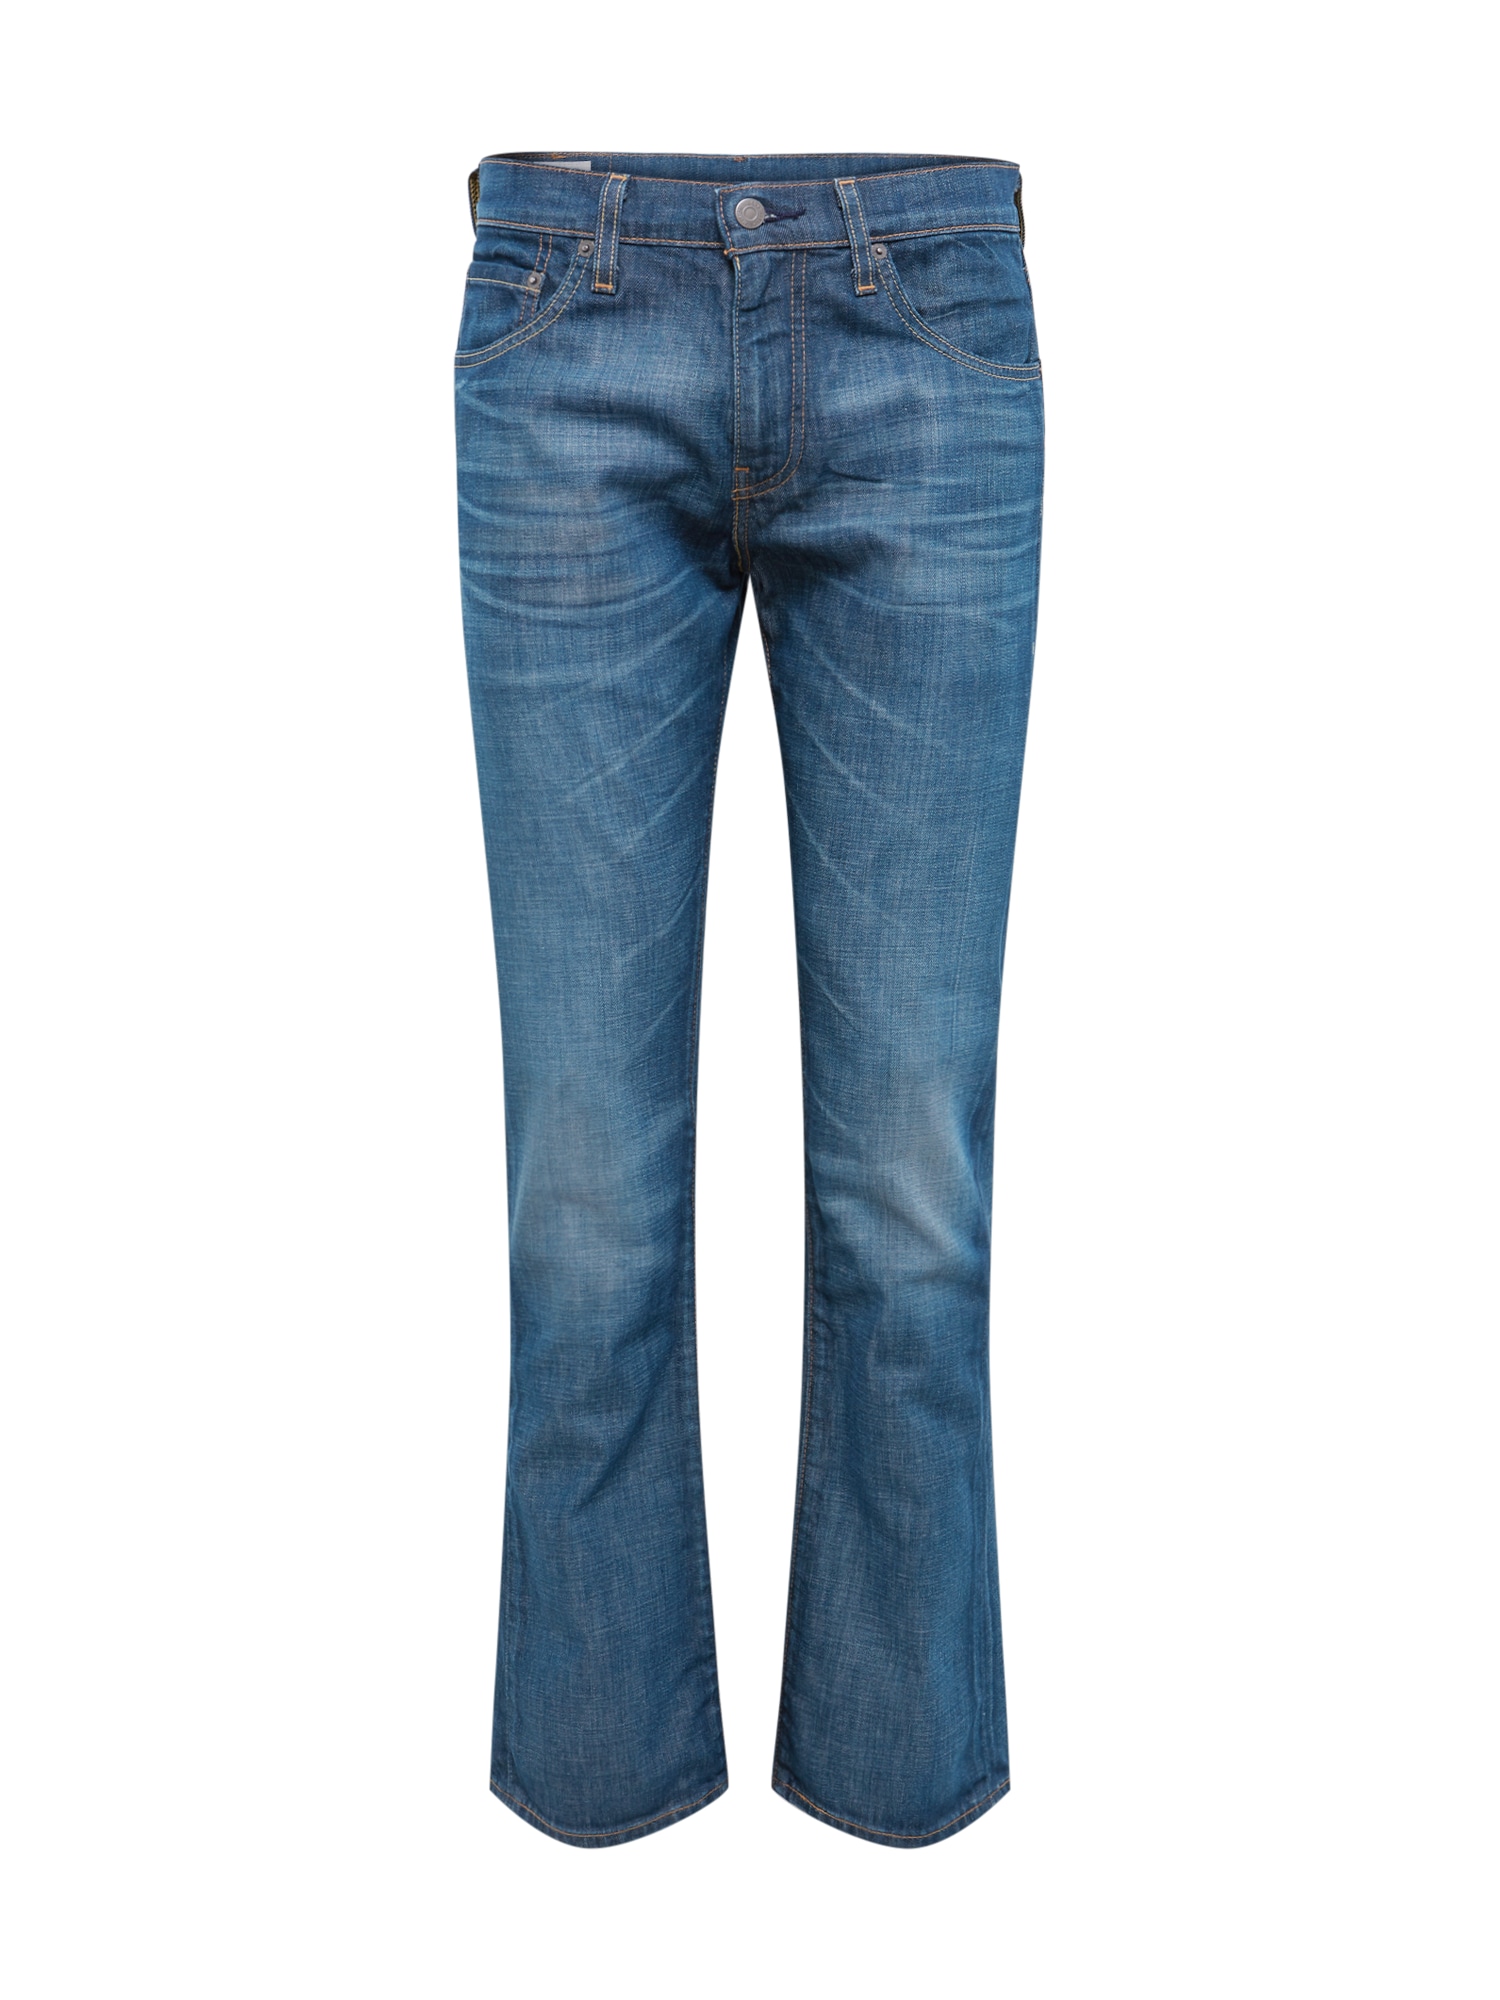 Jeans '527™ SLIM BOOT CUT' von Levis